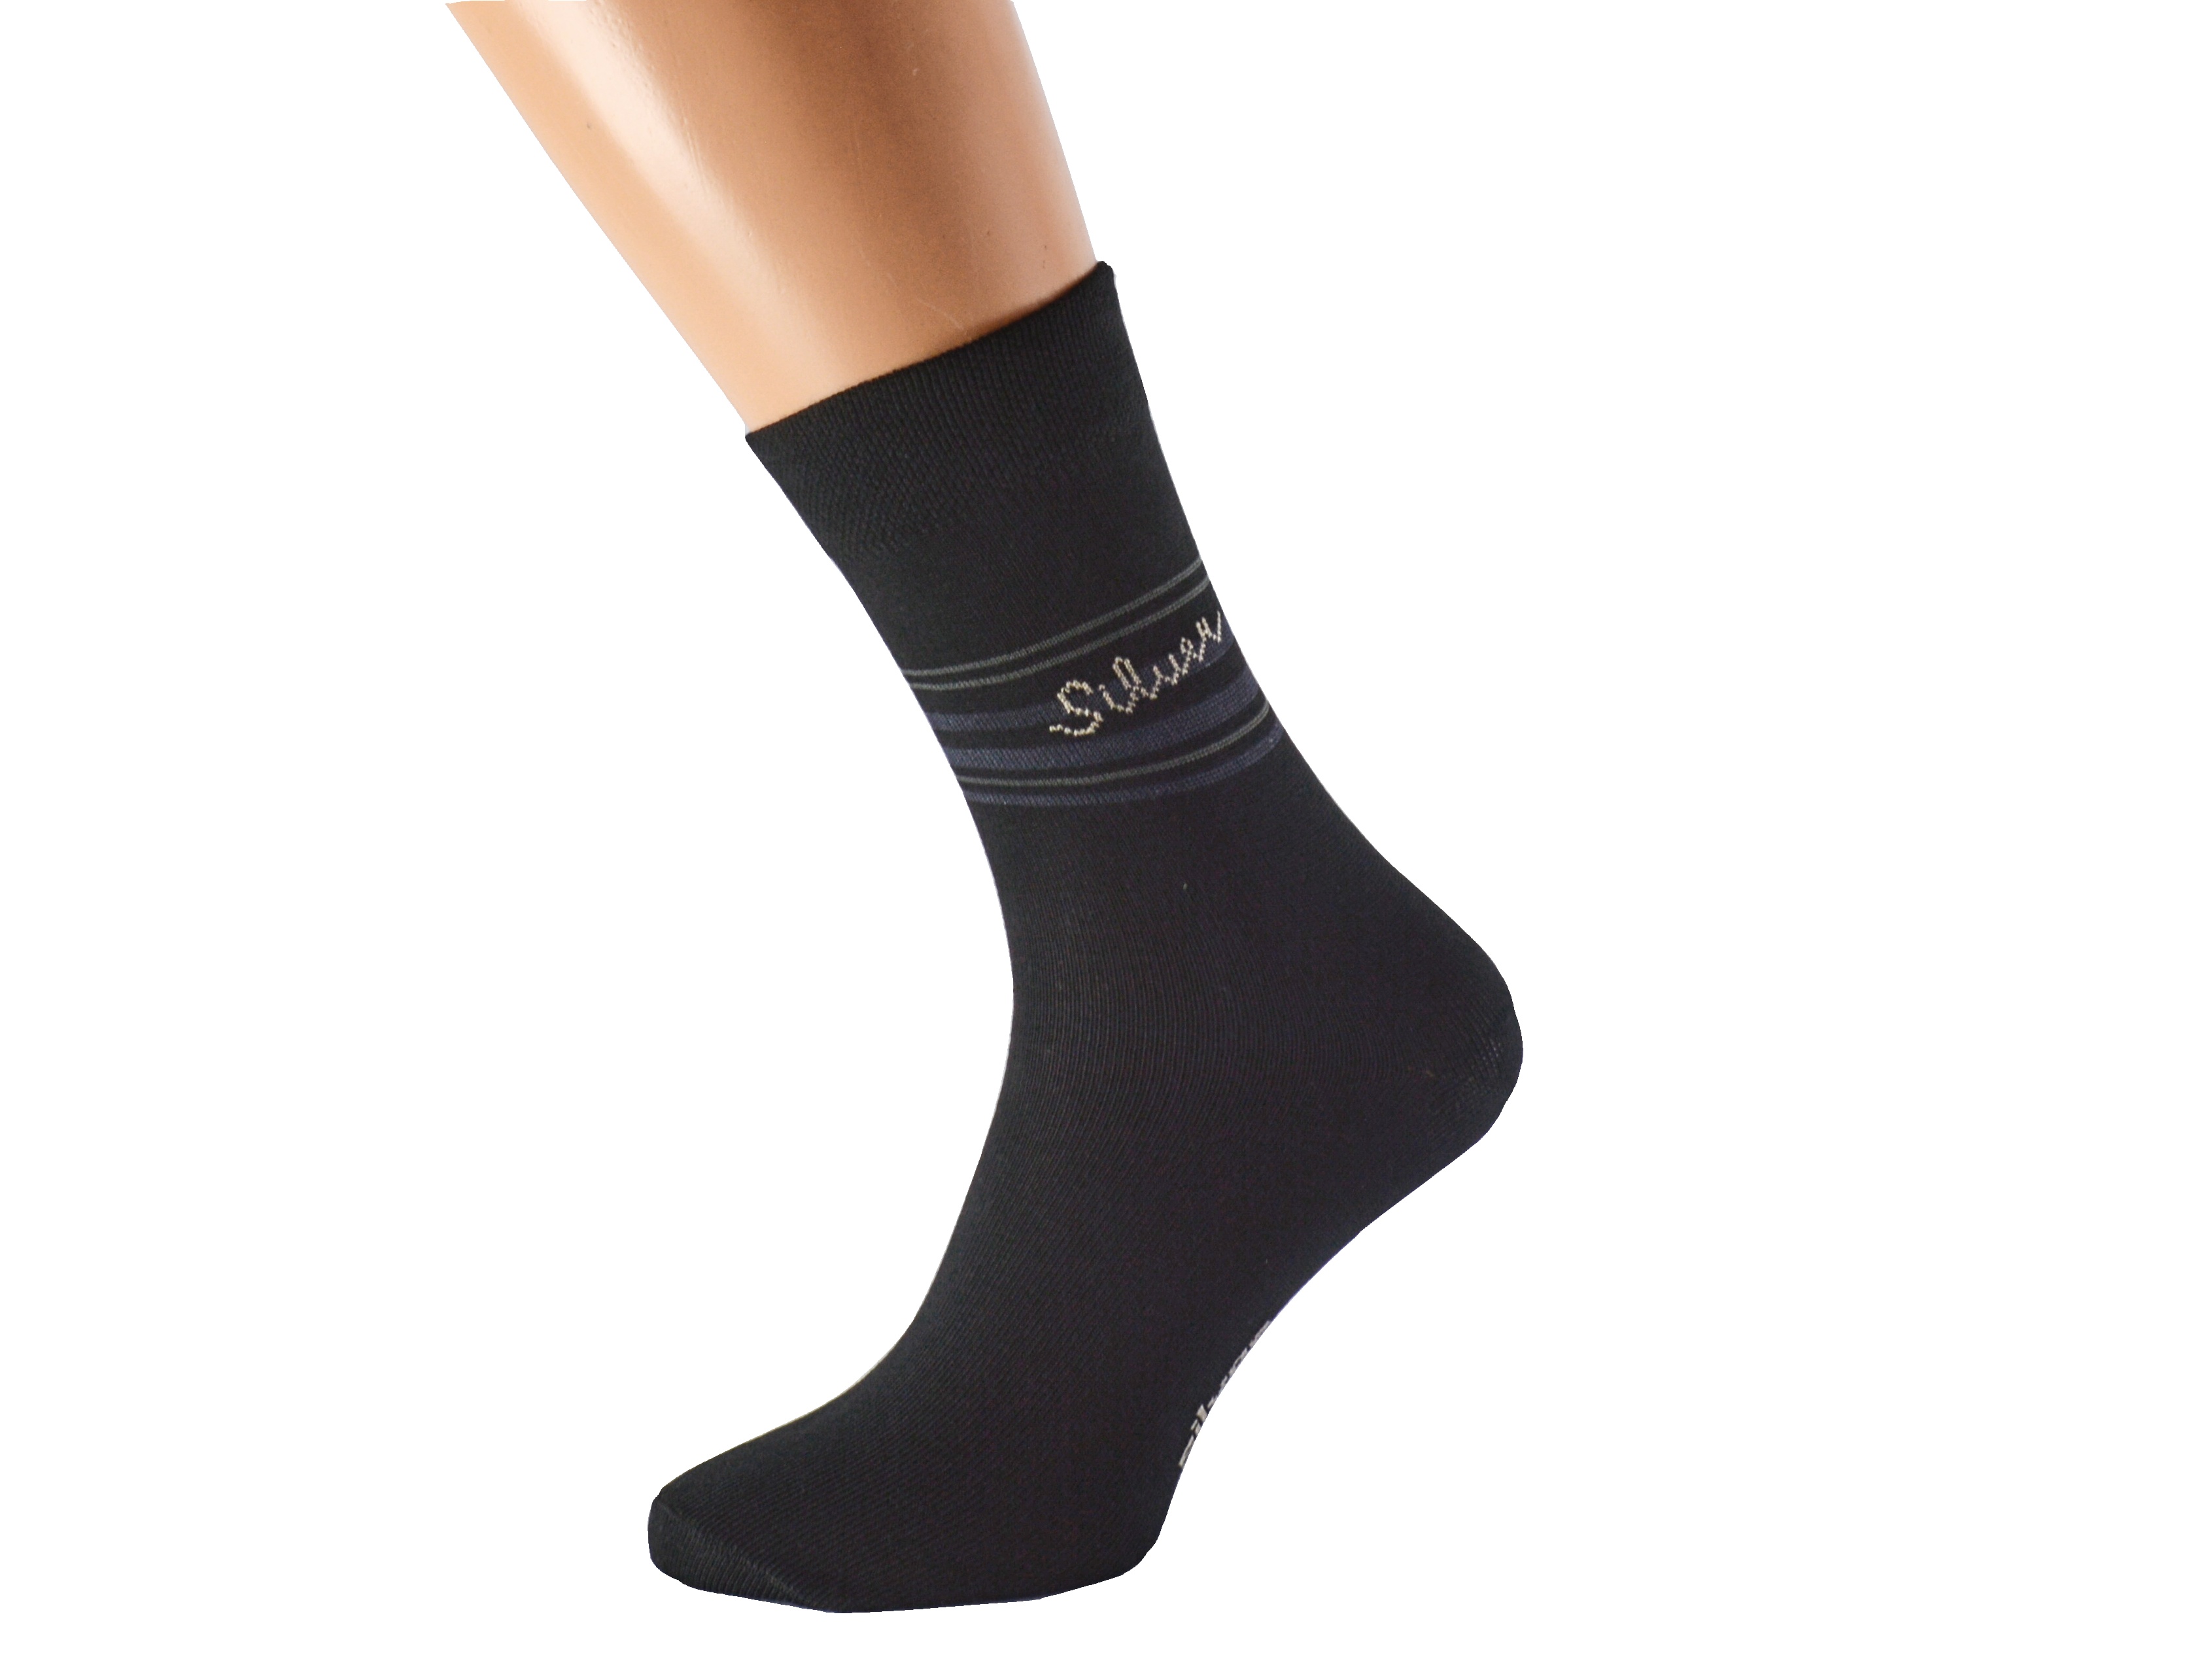 Antibakteriální ponožky proti pocení SILVER KUKS Barva: Černé, Velikost: EUR 49-50 (UK 13-14)